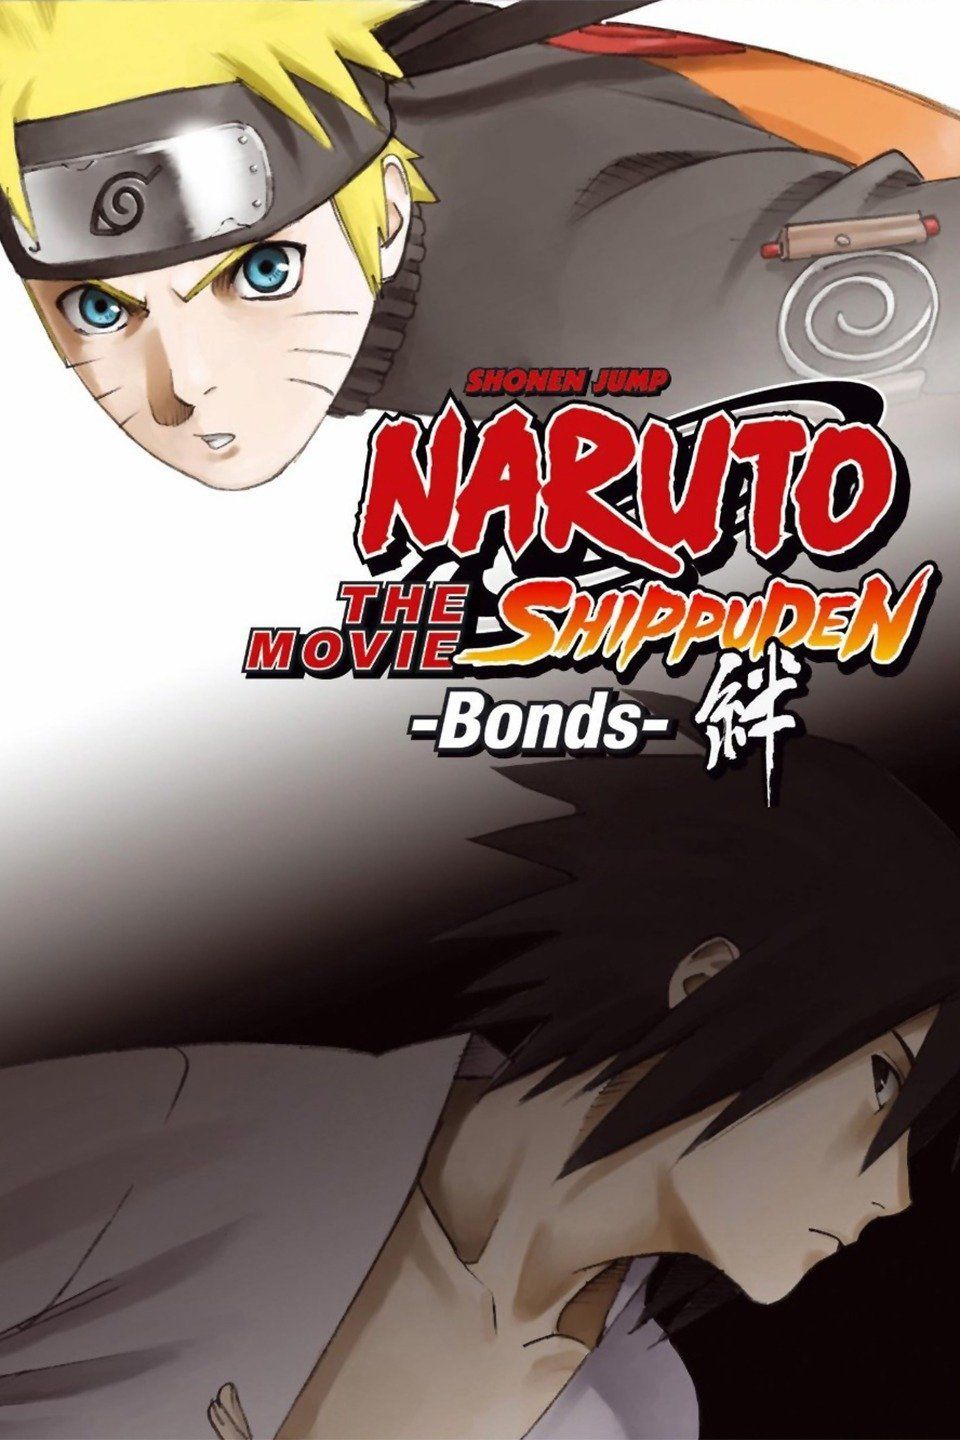 Guia dos filmes e OVAS de Naruto em ordem cronológica